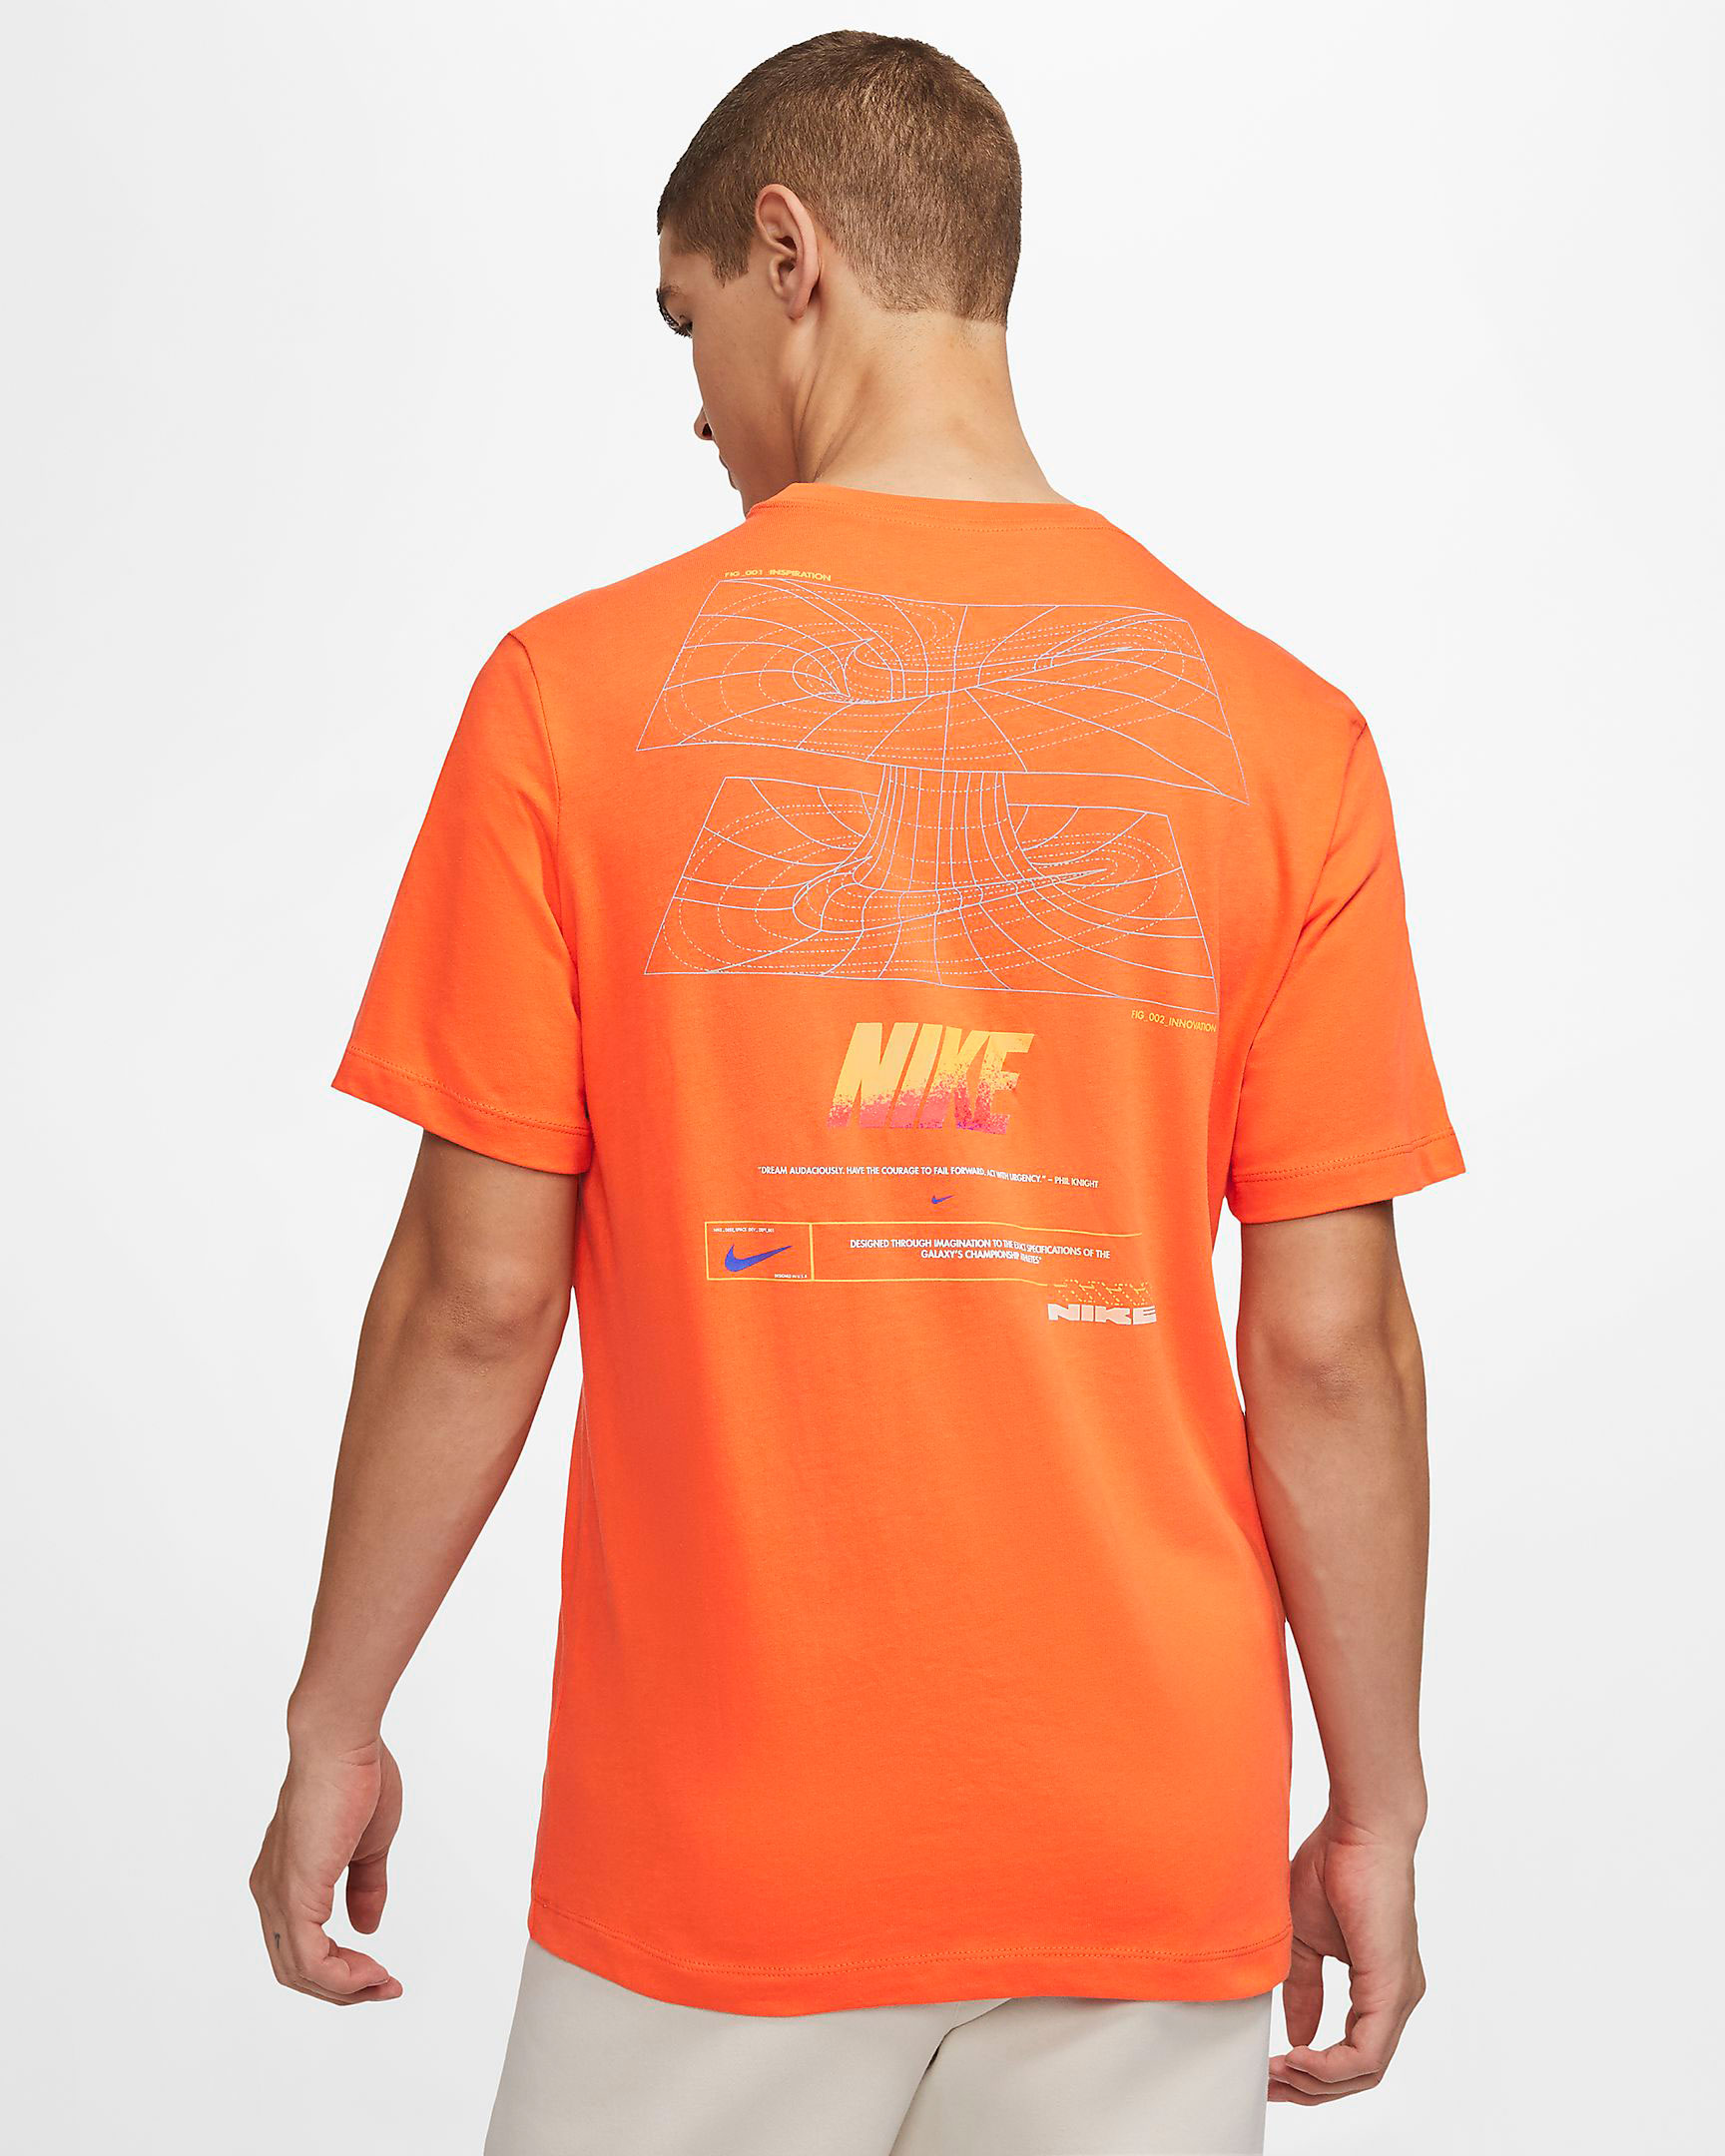 Nike Foamposite One Rugged Orange 